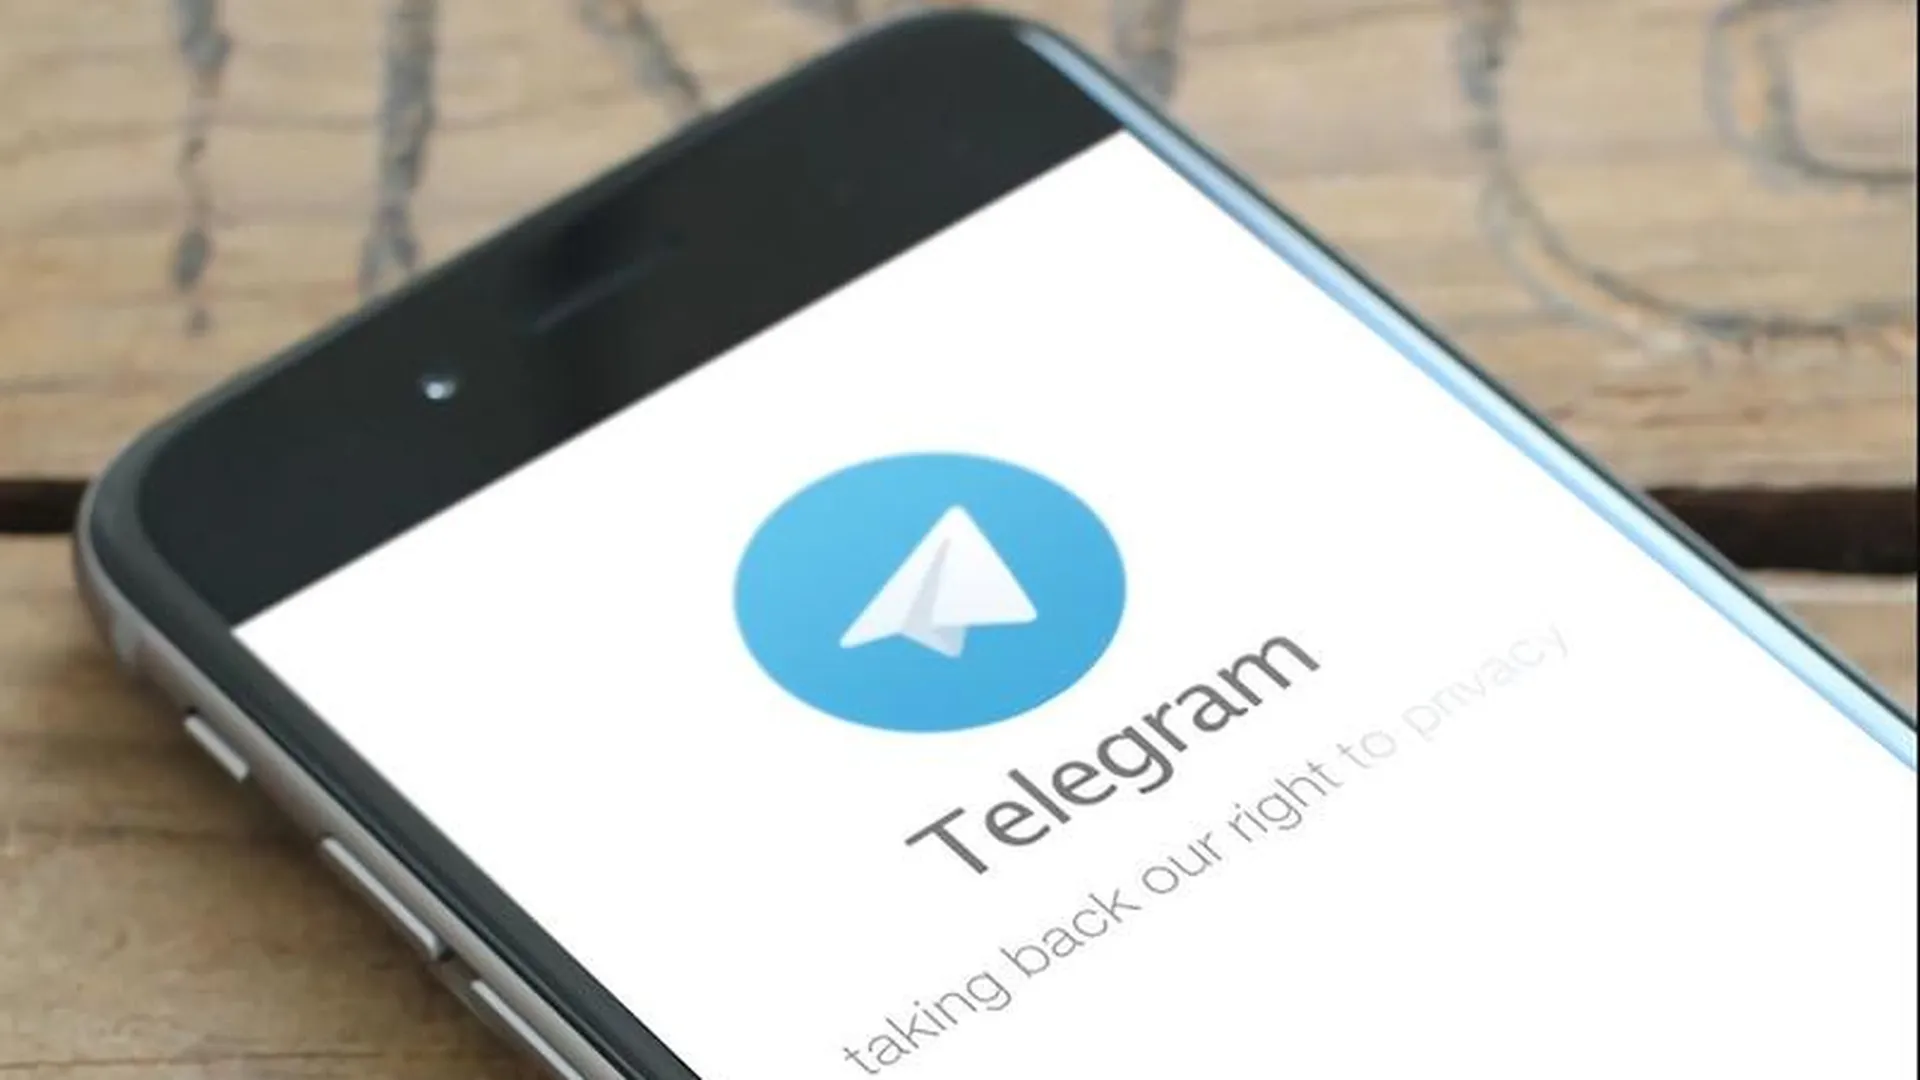 Канал для заработка на фото и видео из Подмосковья появился в Telegram